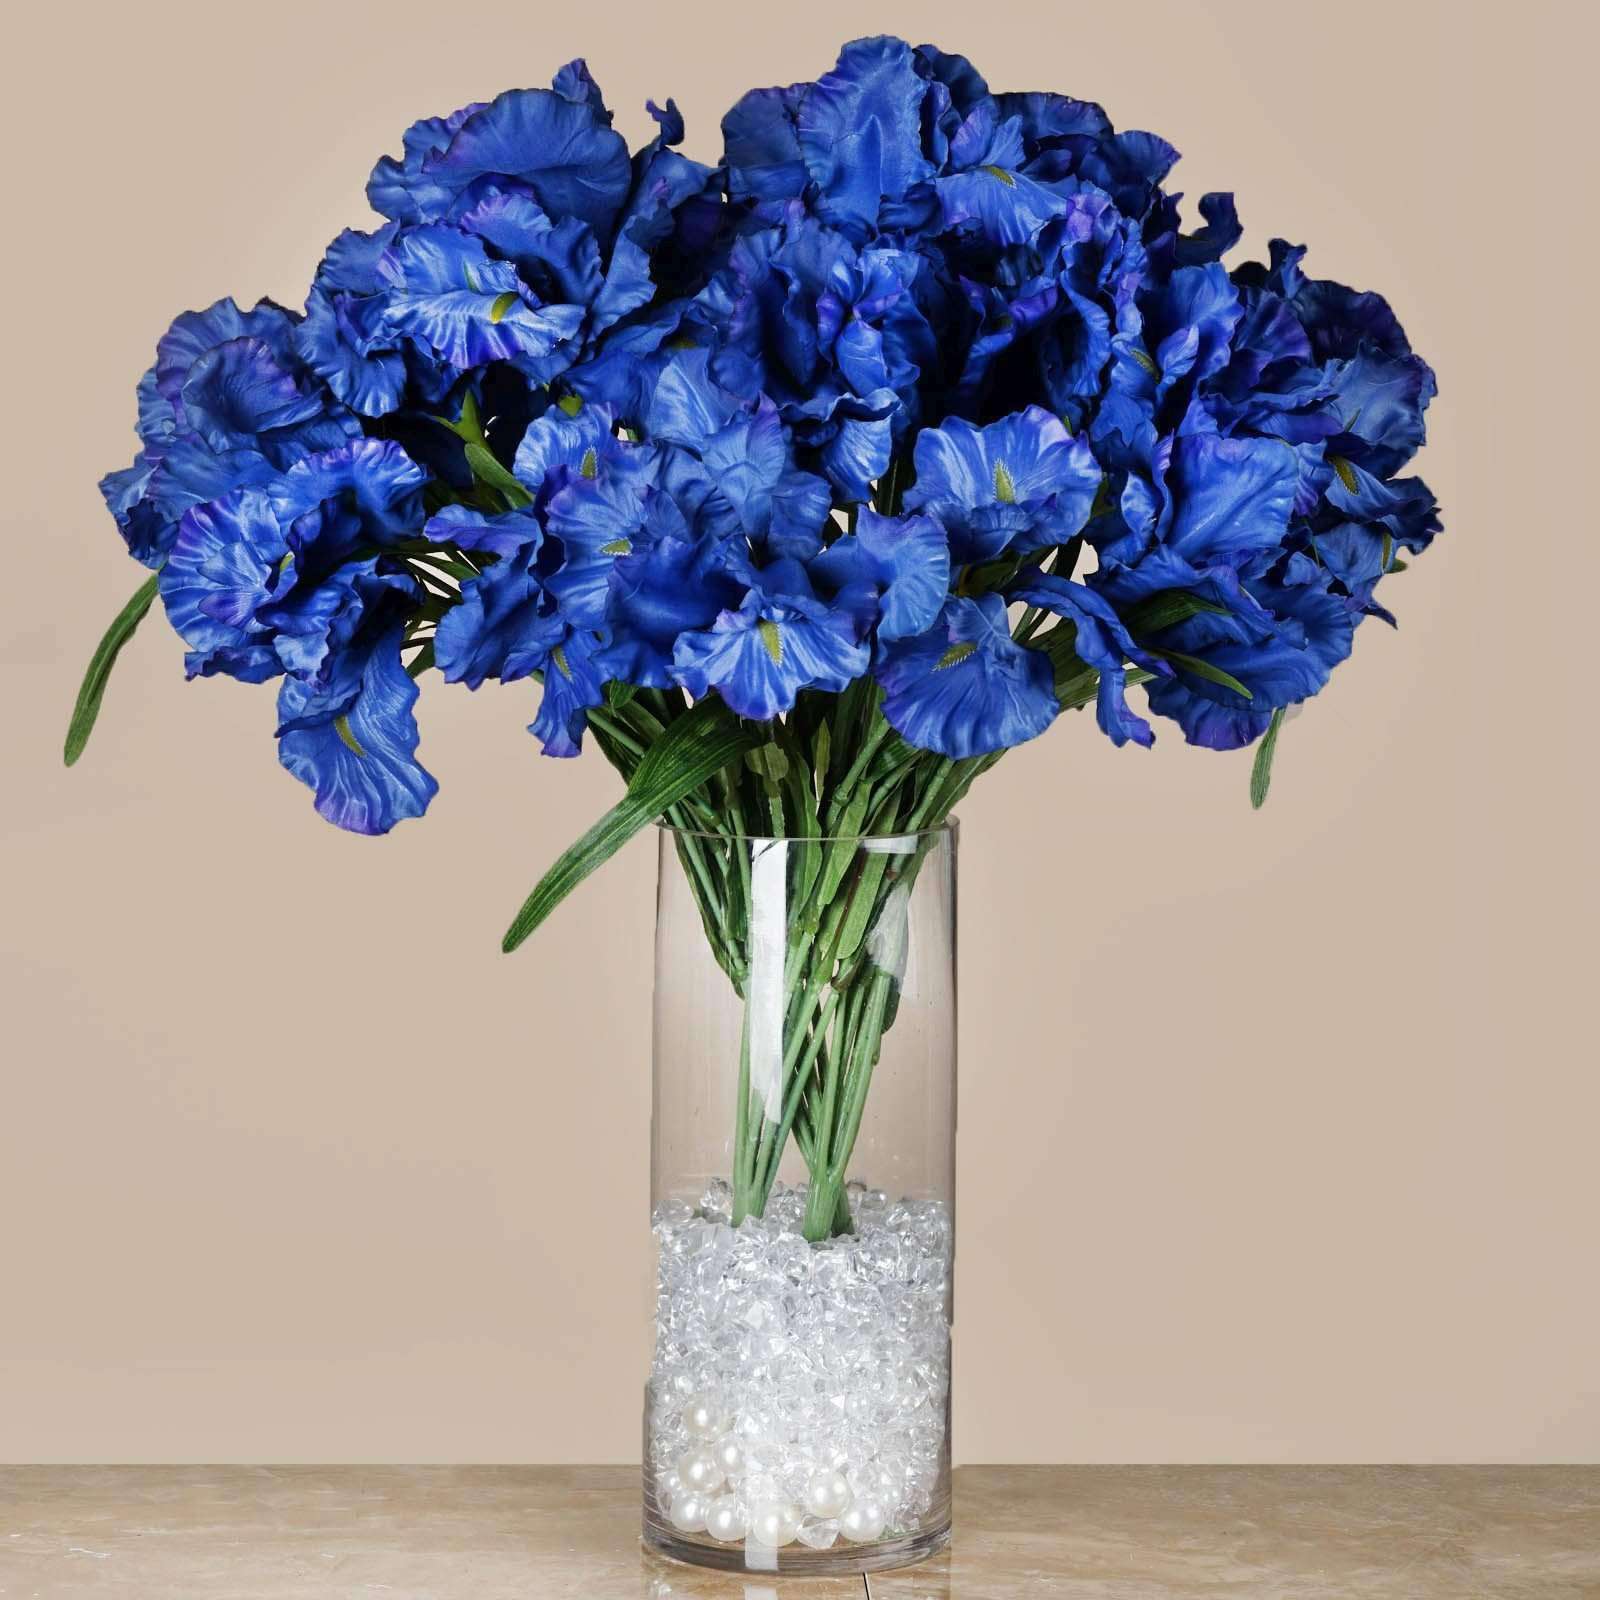 4 Bush 36 Pcs Blue Artificial Large Iris Flowers Bridal Bouquet